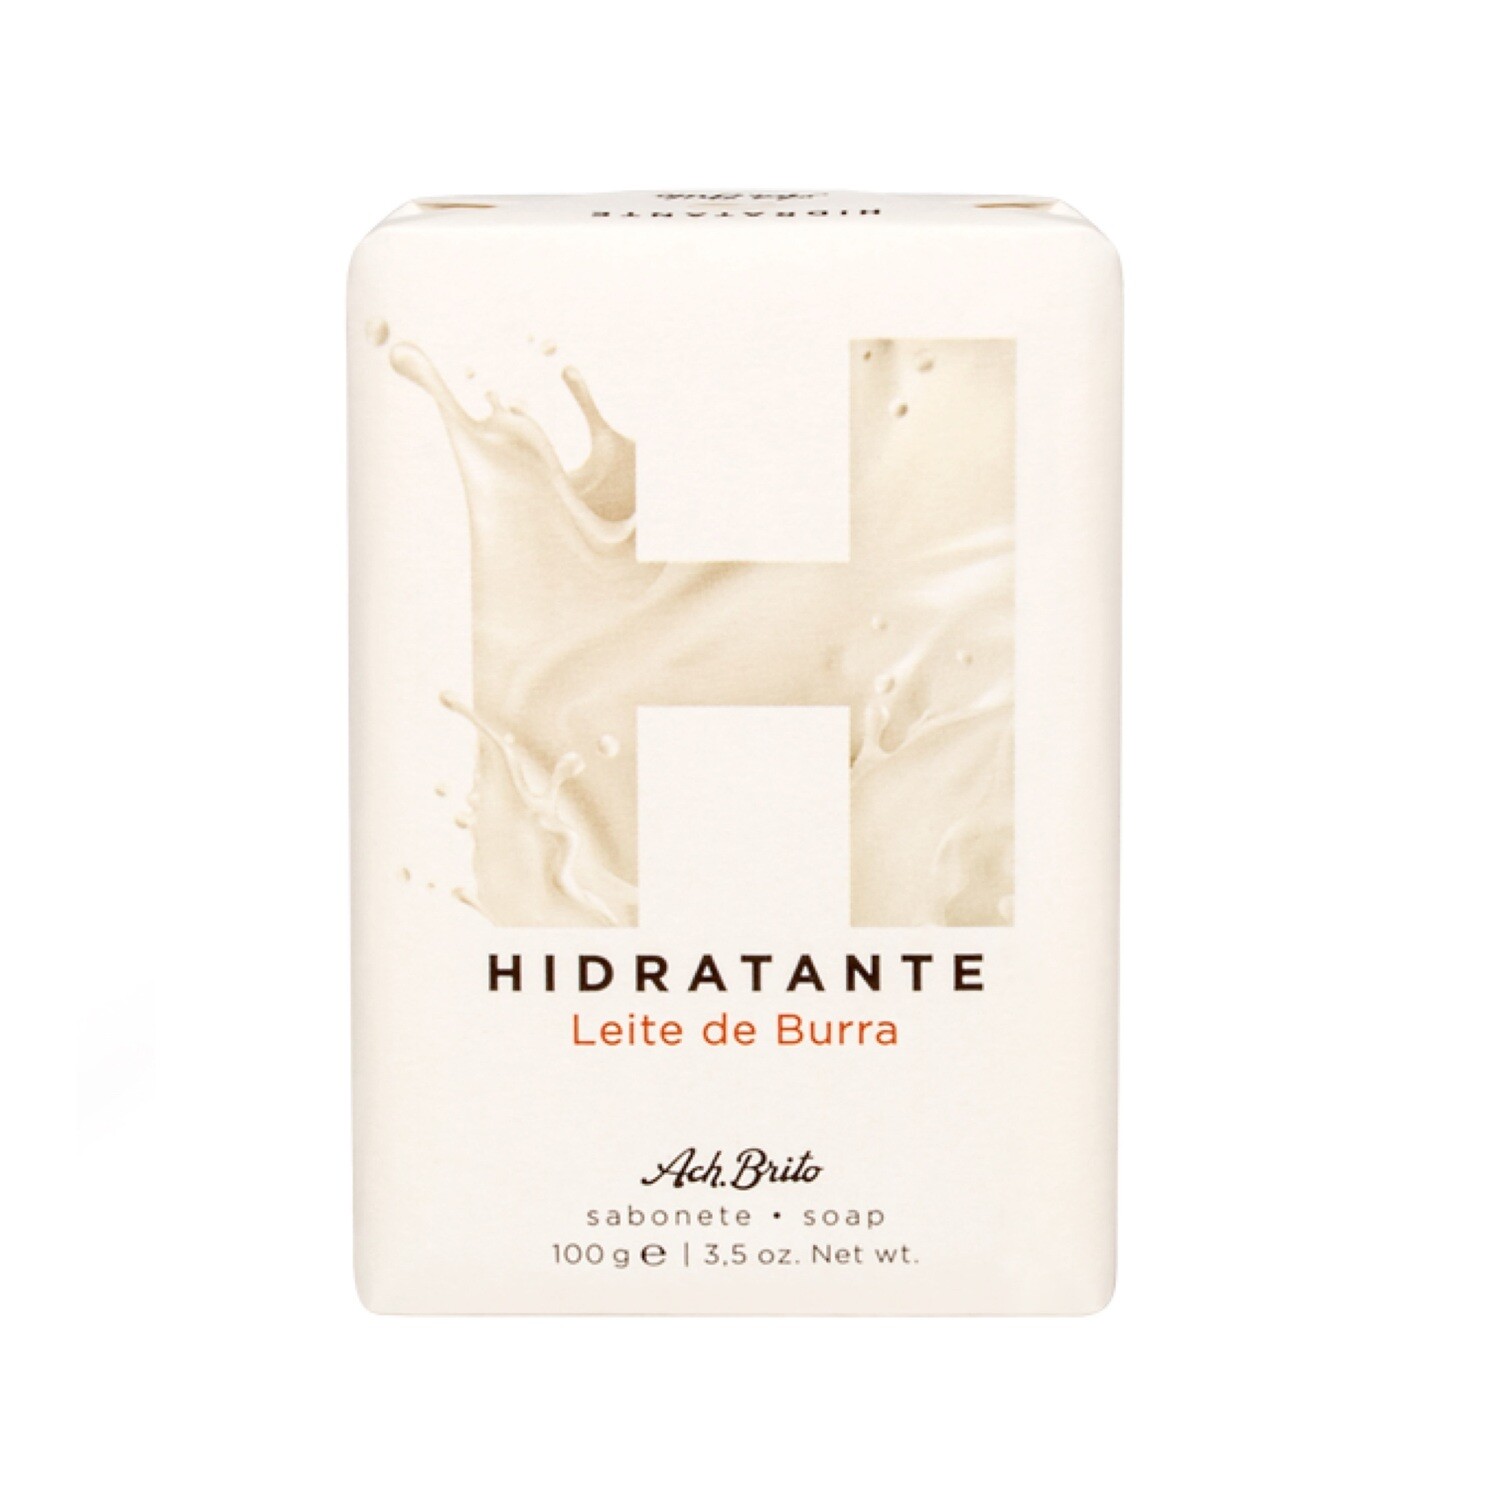 HIDRATANTE (Moisturizing) – Leite de Burra (Donkey Milk)